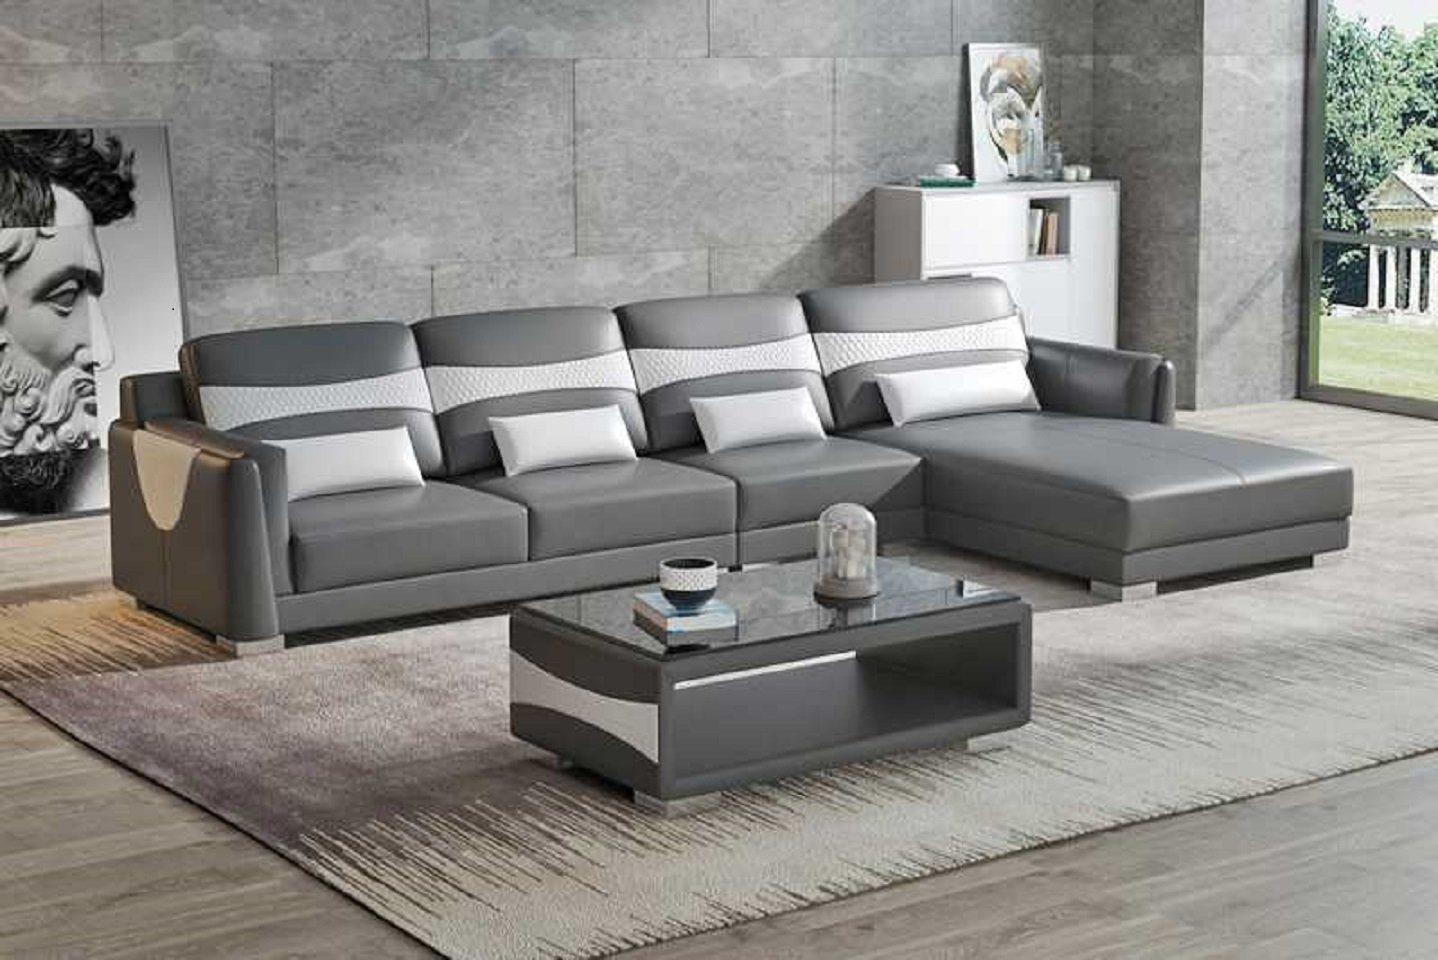 JVmoebel Ecksofa Luxus Eckgarnitur Ecksofa Grau 3 Made in Couch Liege Wohnzimmer Neu, Teile, Europe Form Sofa L